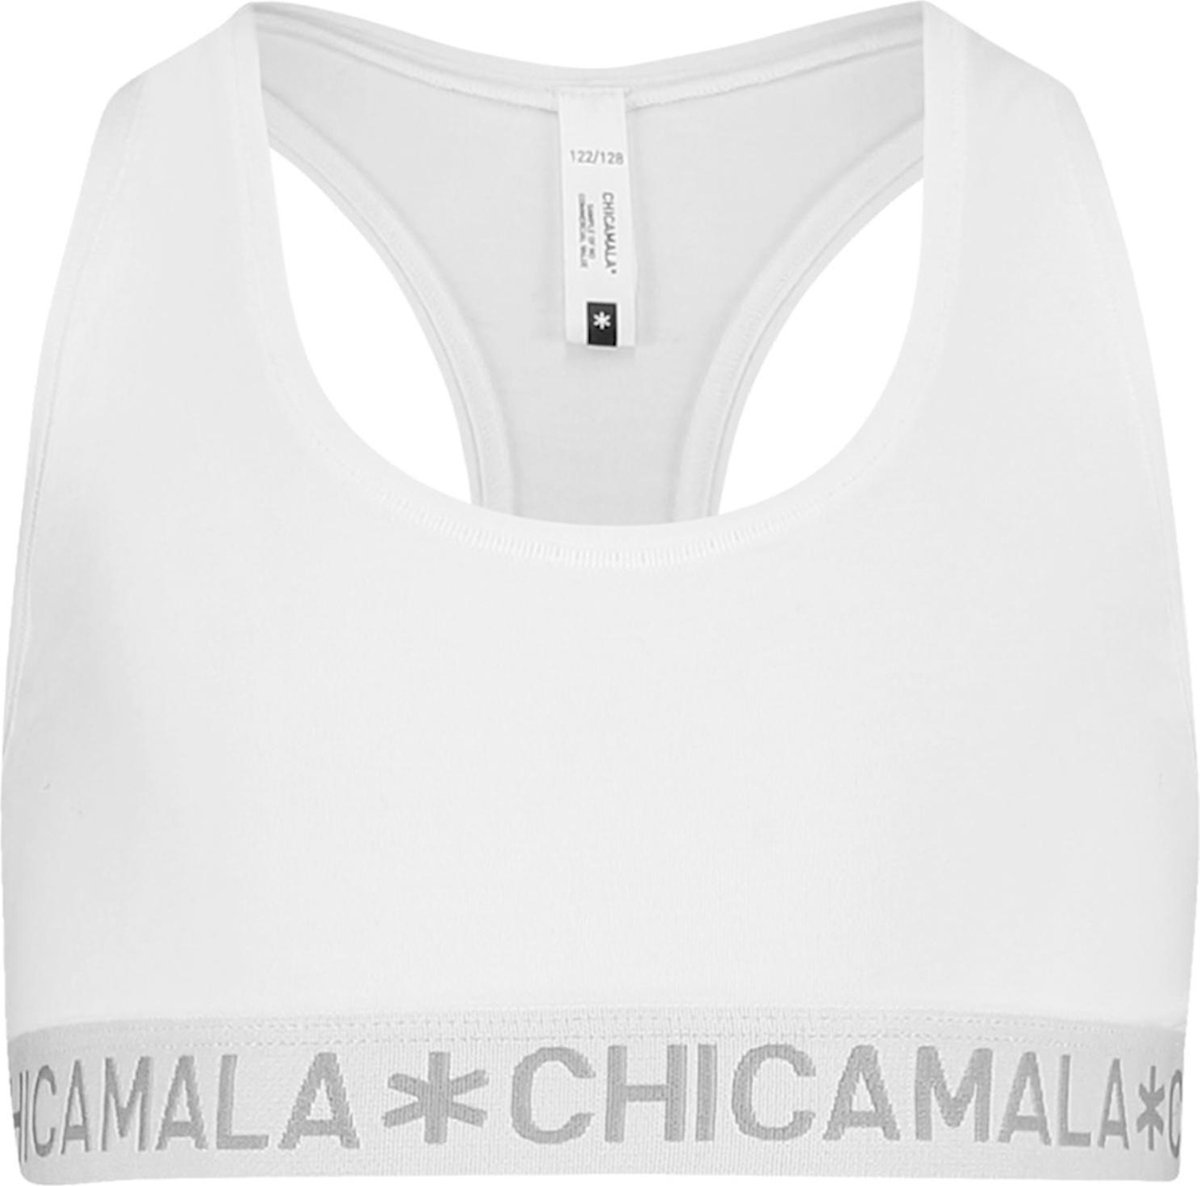 Chicamala - Dames Racer Back Wit - L